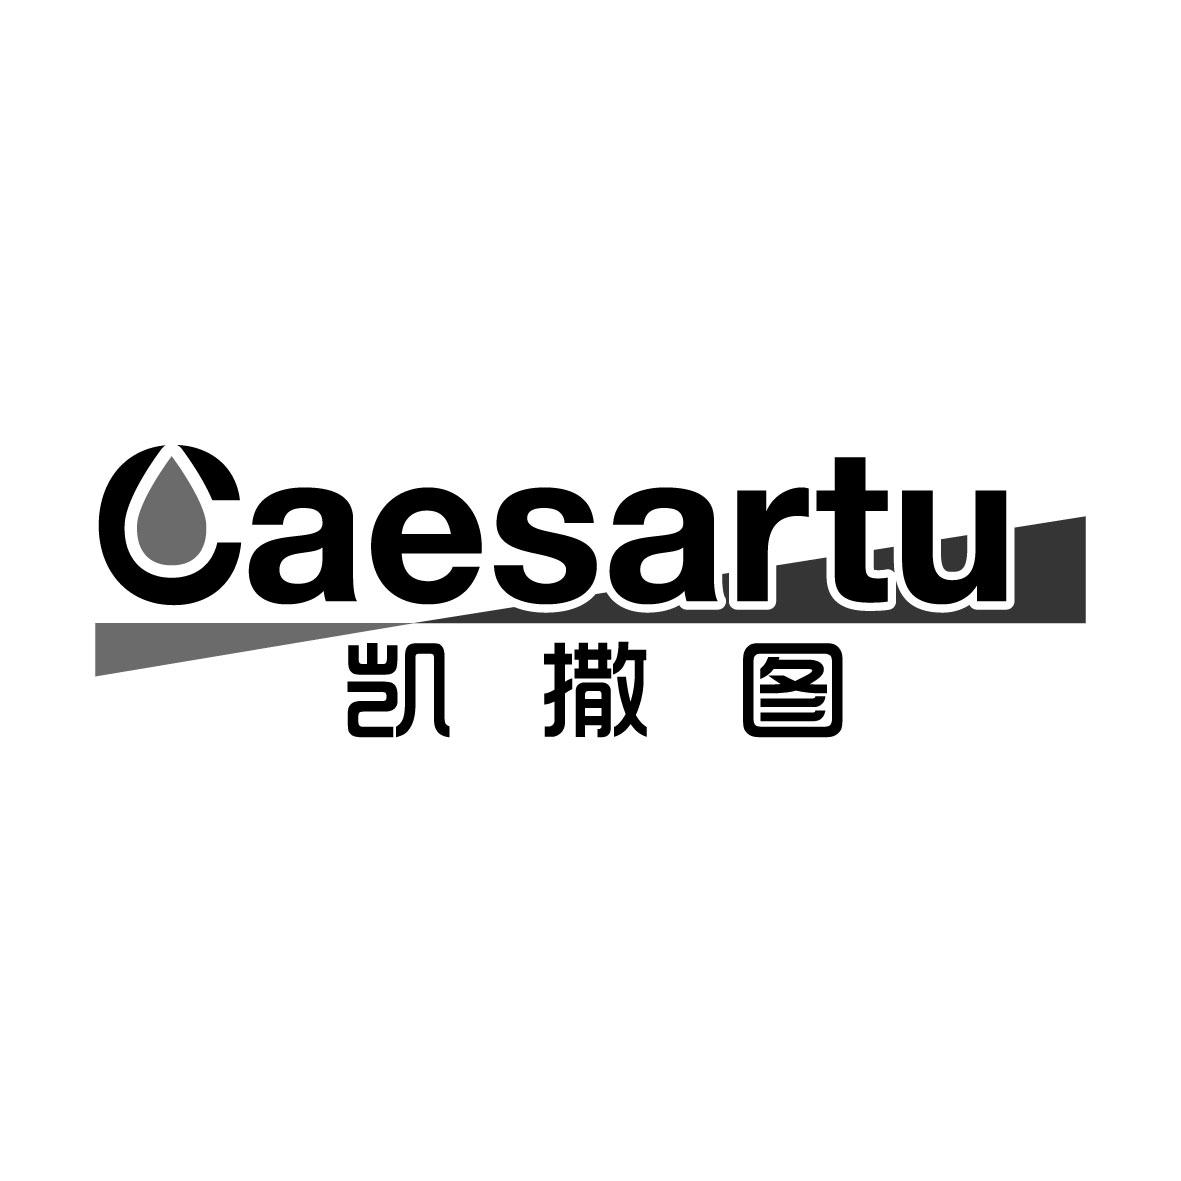 广州藏知品牌管理有限公司商标凯撒图 CAESARTU（16类）商标转让流程及费用商标图样1